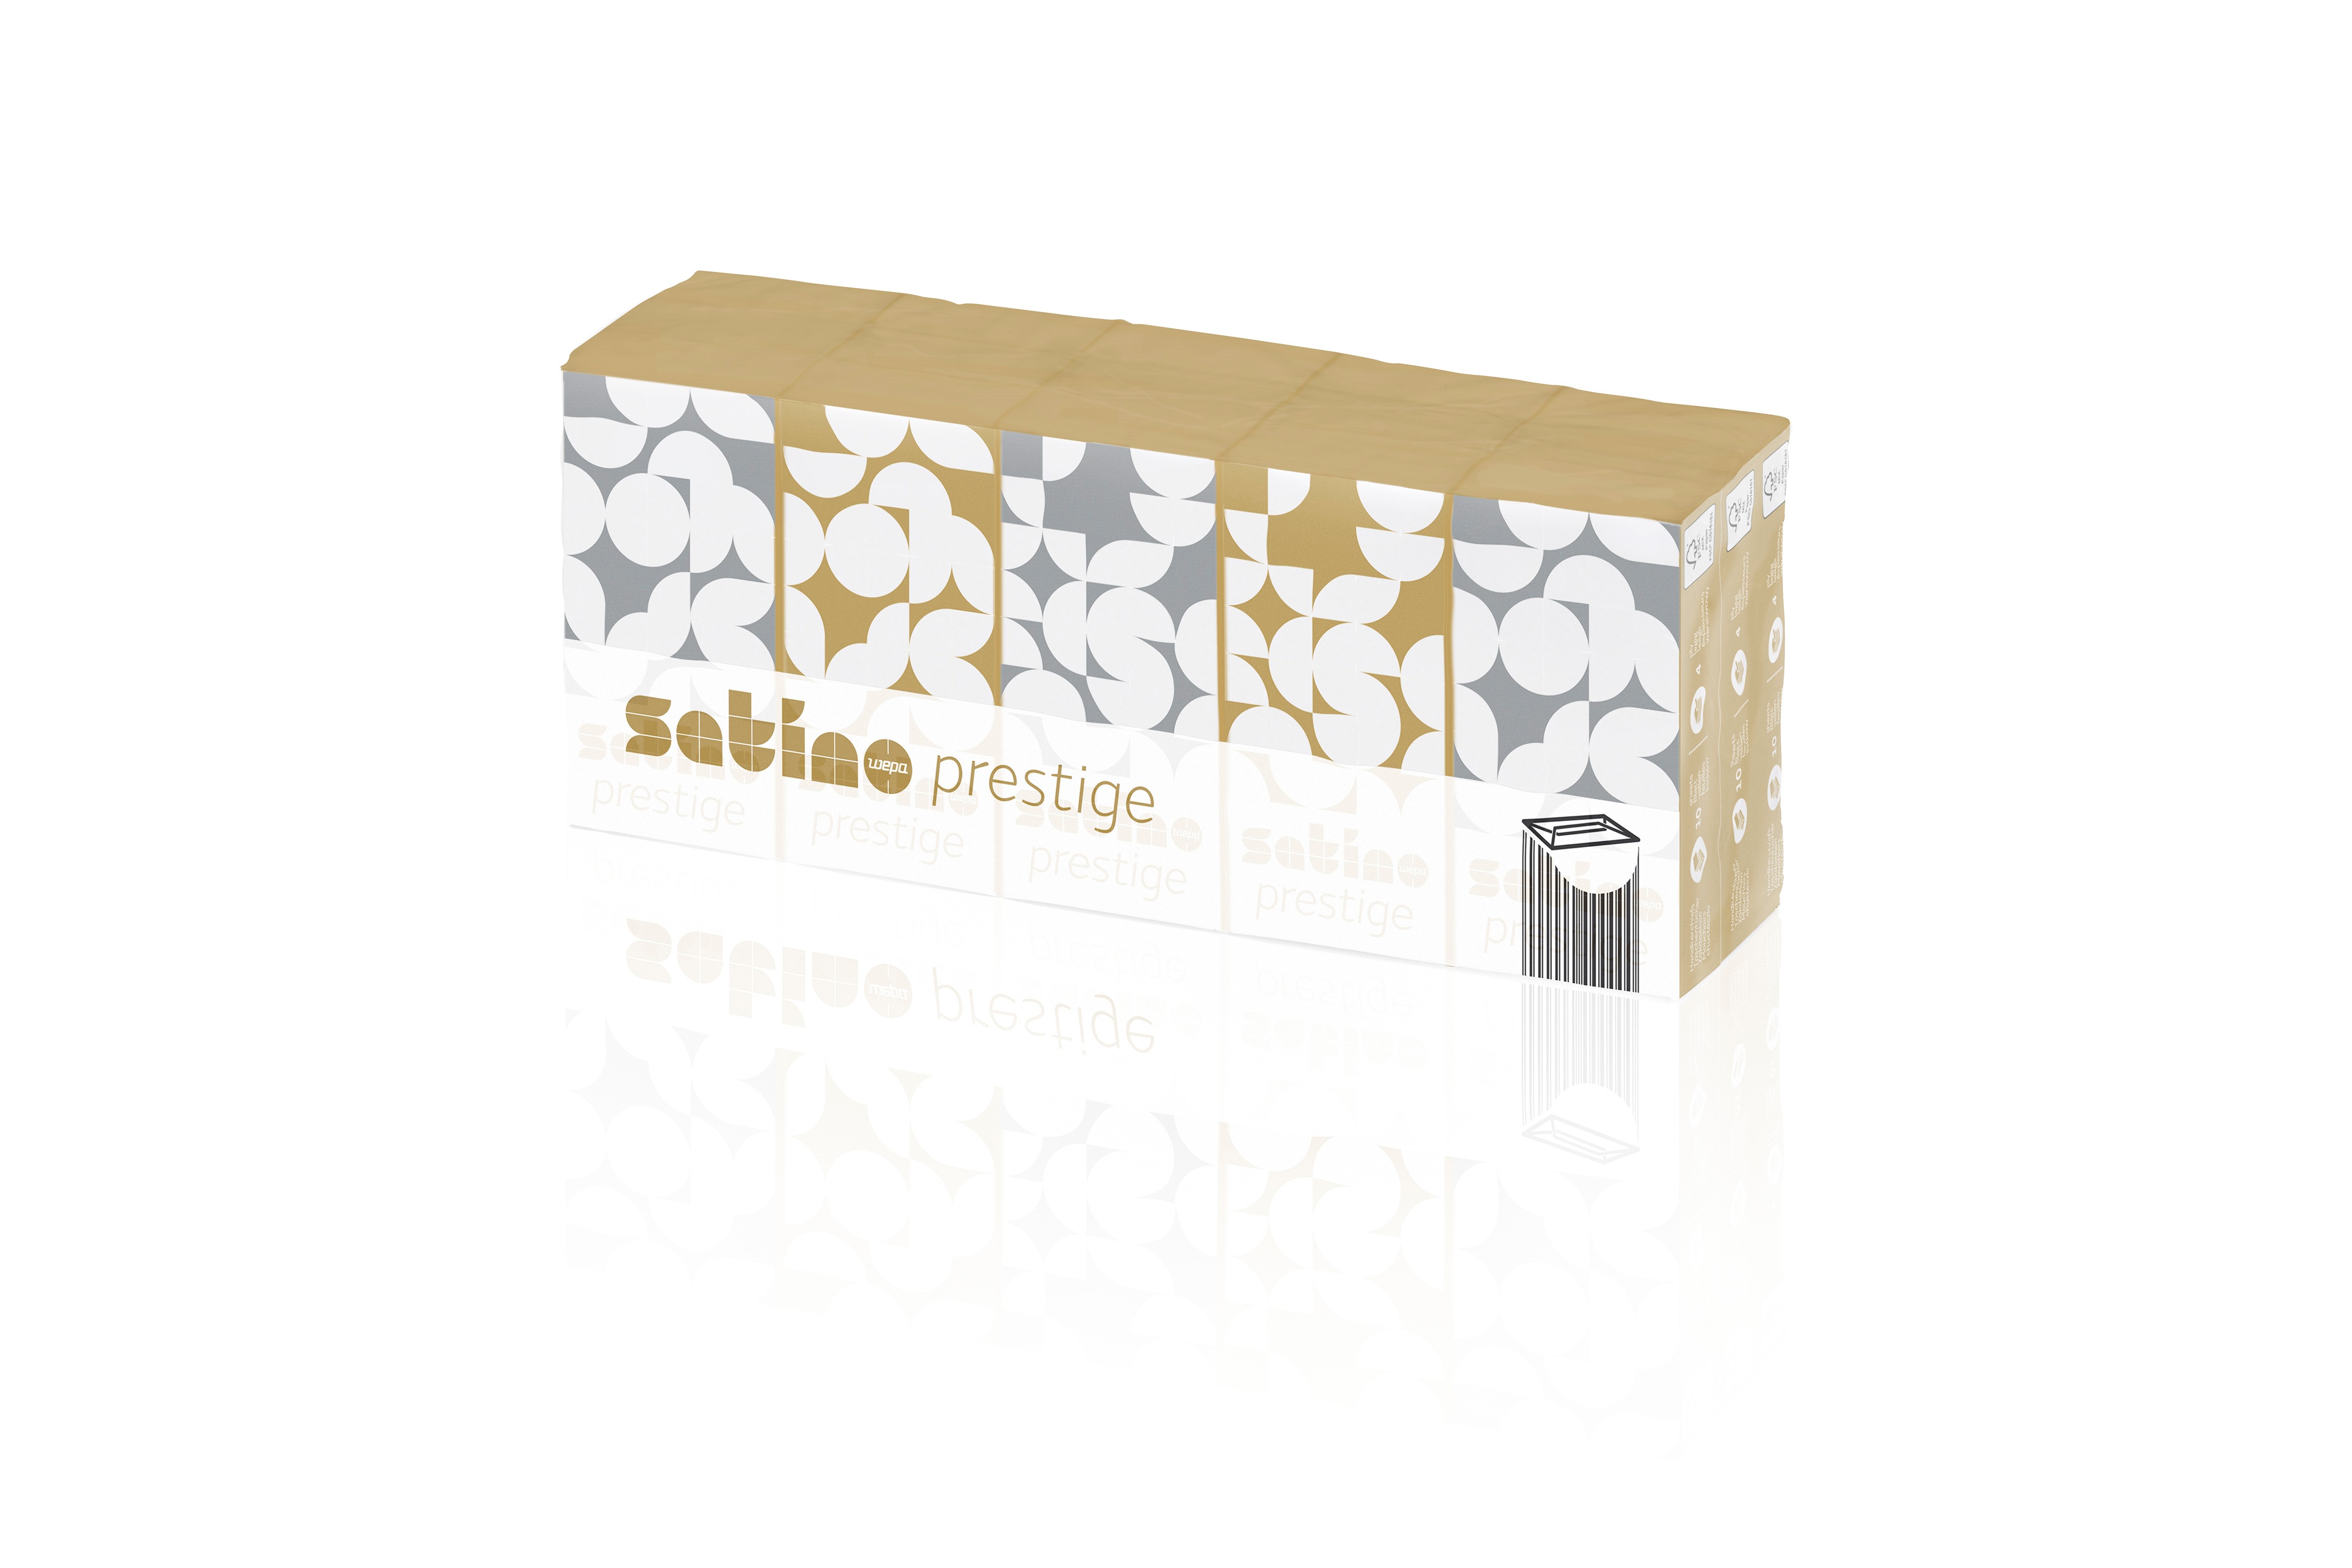 Produktbild: Taschentücher 4lg hochweiß ZS satino prestige 15 Pack (Karton)